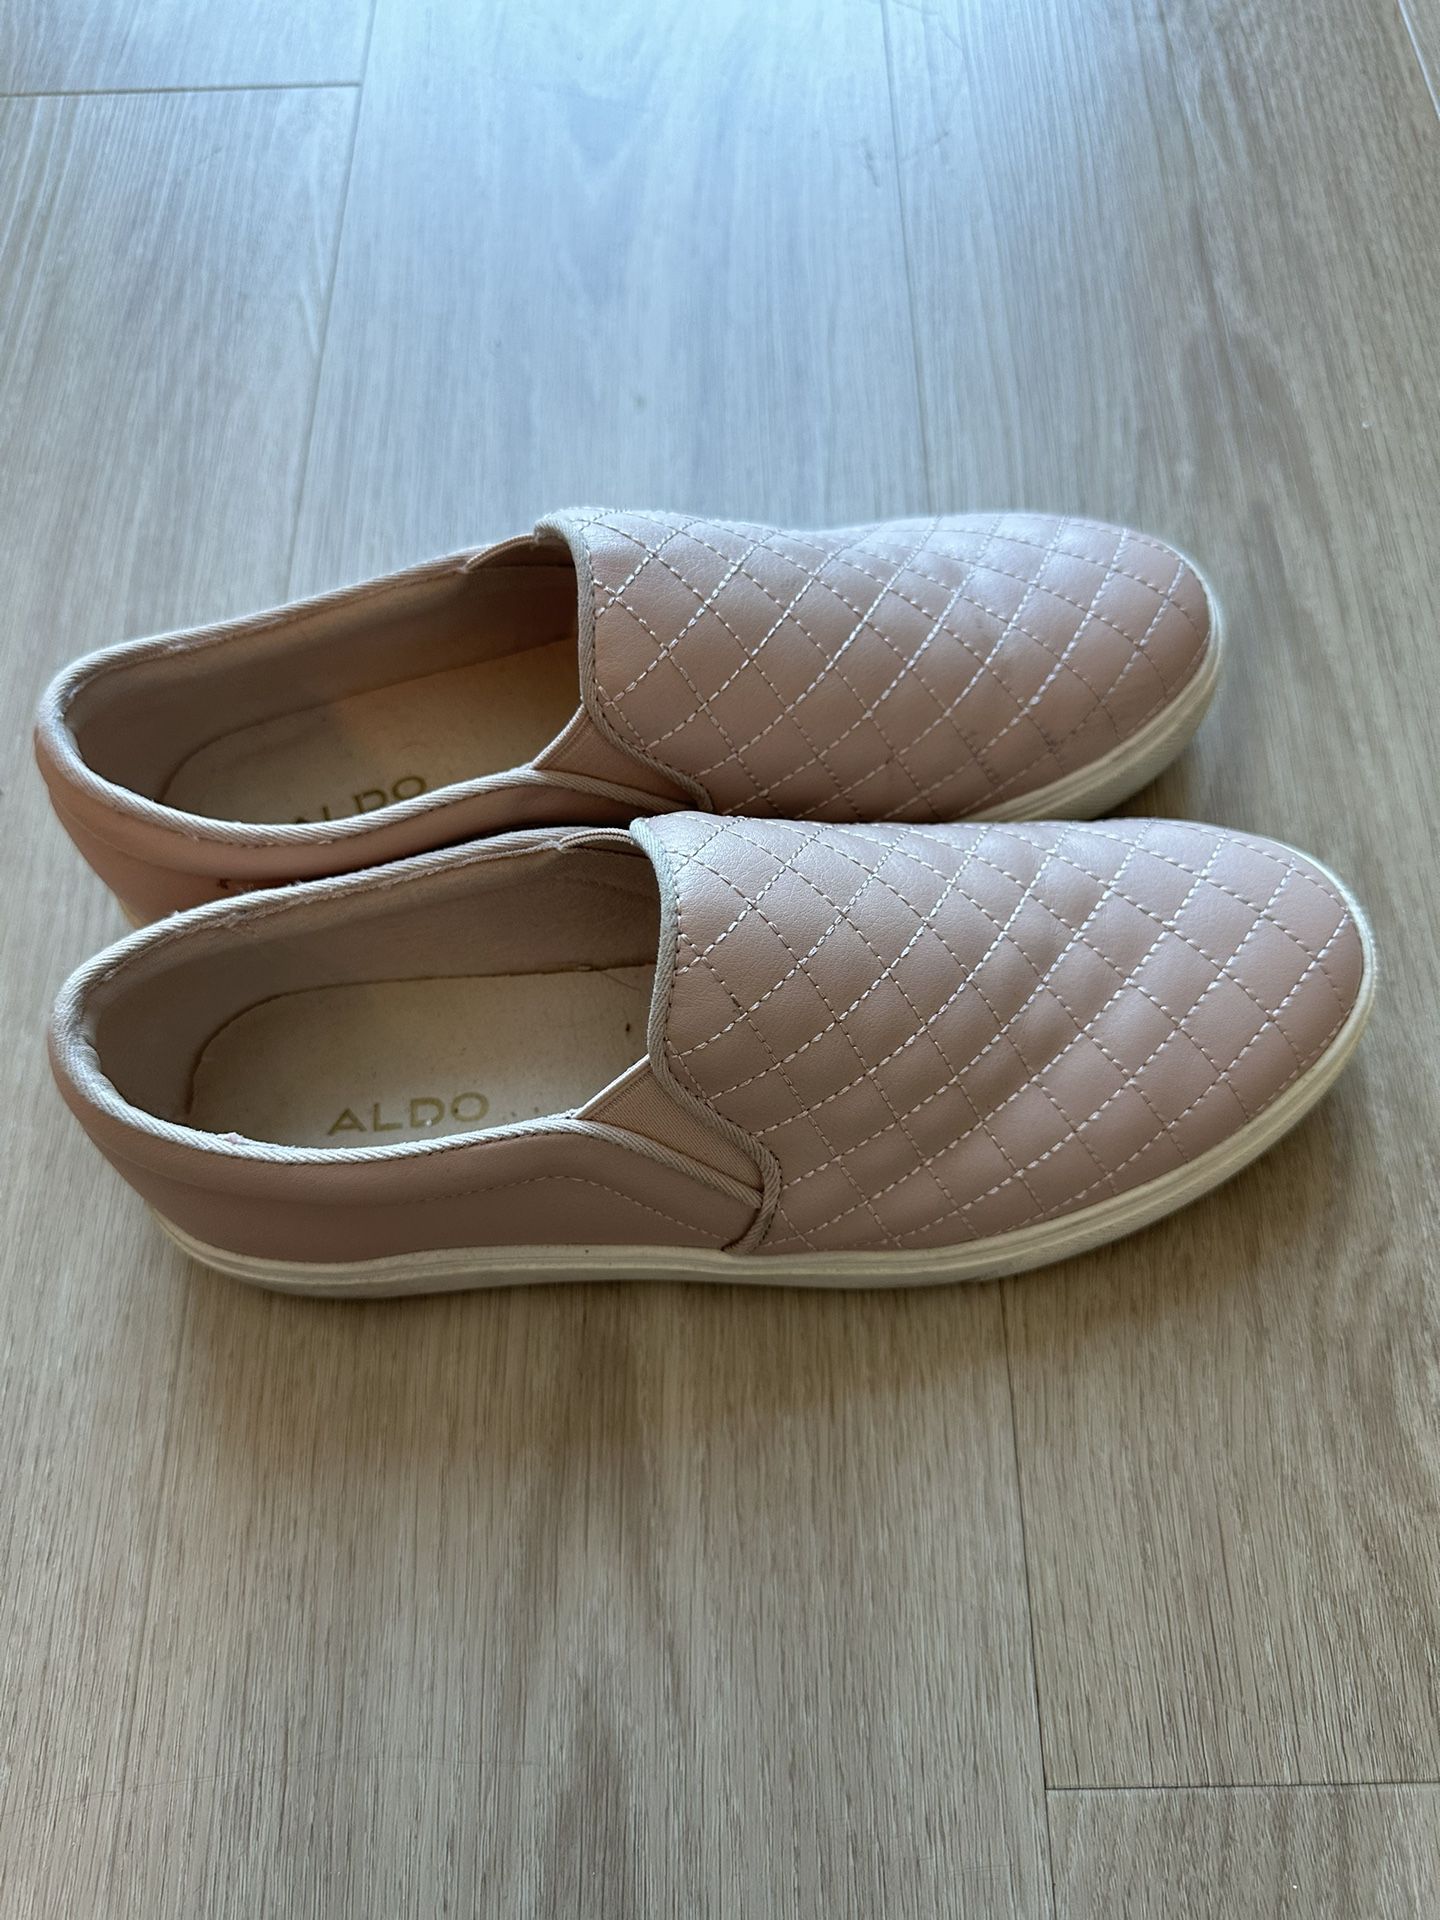 Women’s Shoes - Size 8.5